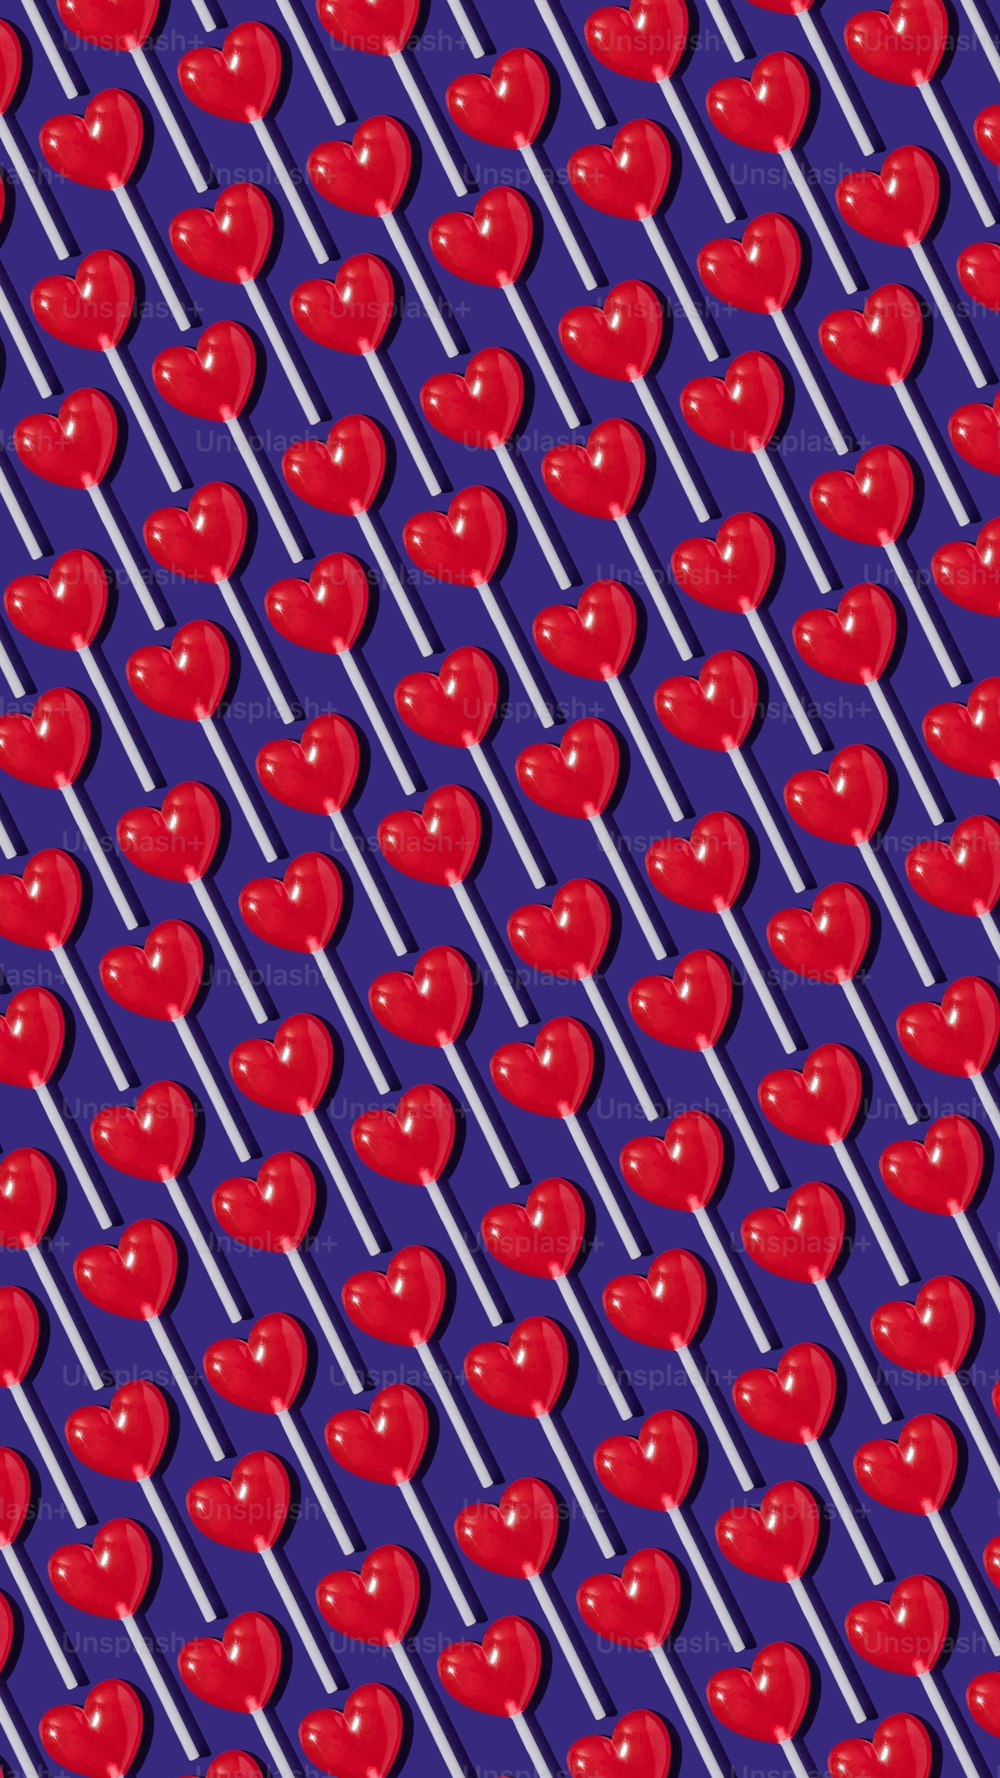 紫色の背景に赤いリンゴのパターン